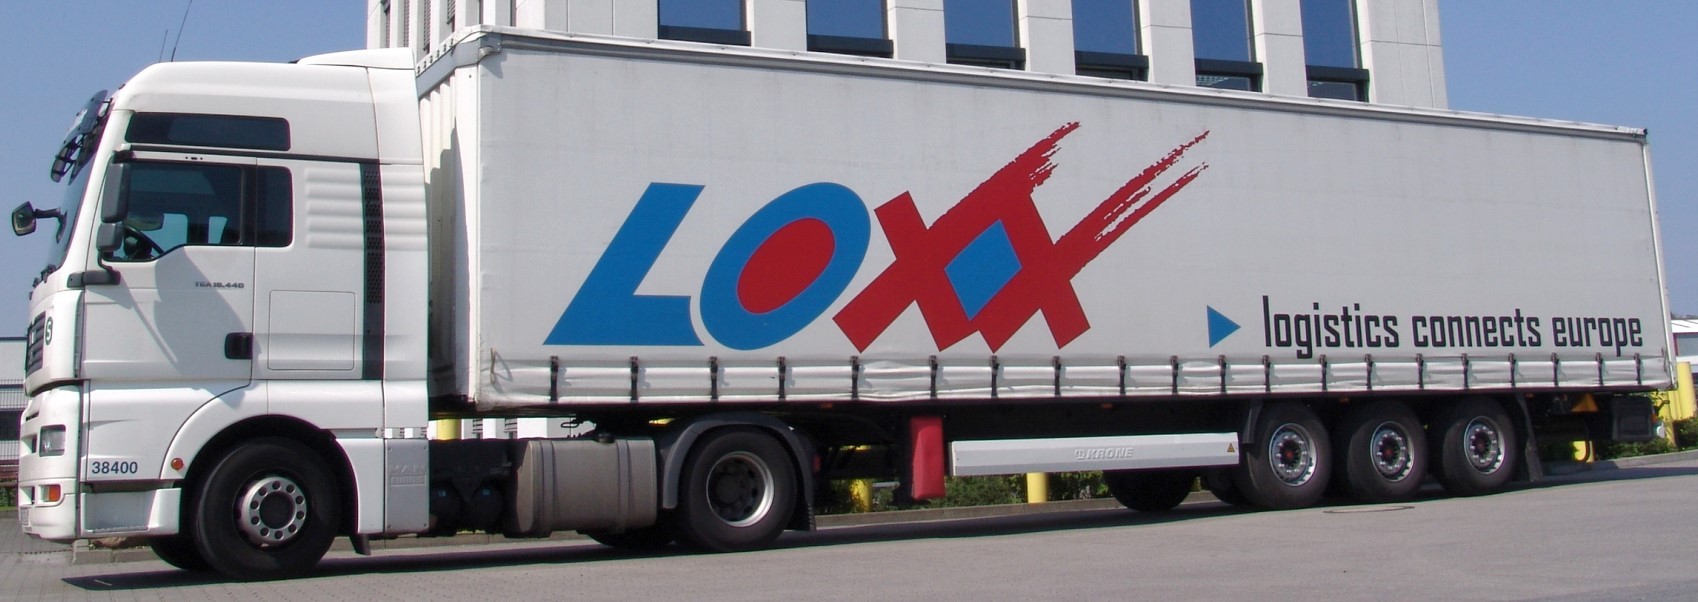 Loxx_Truck_PR